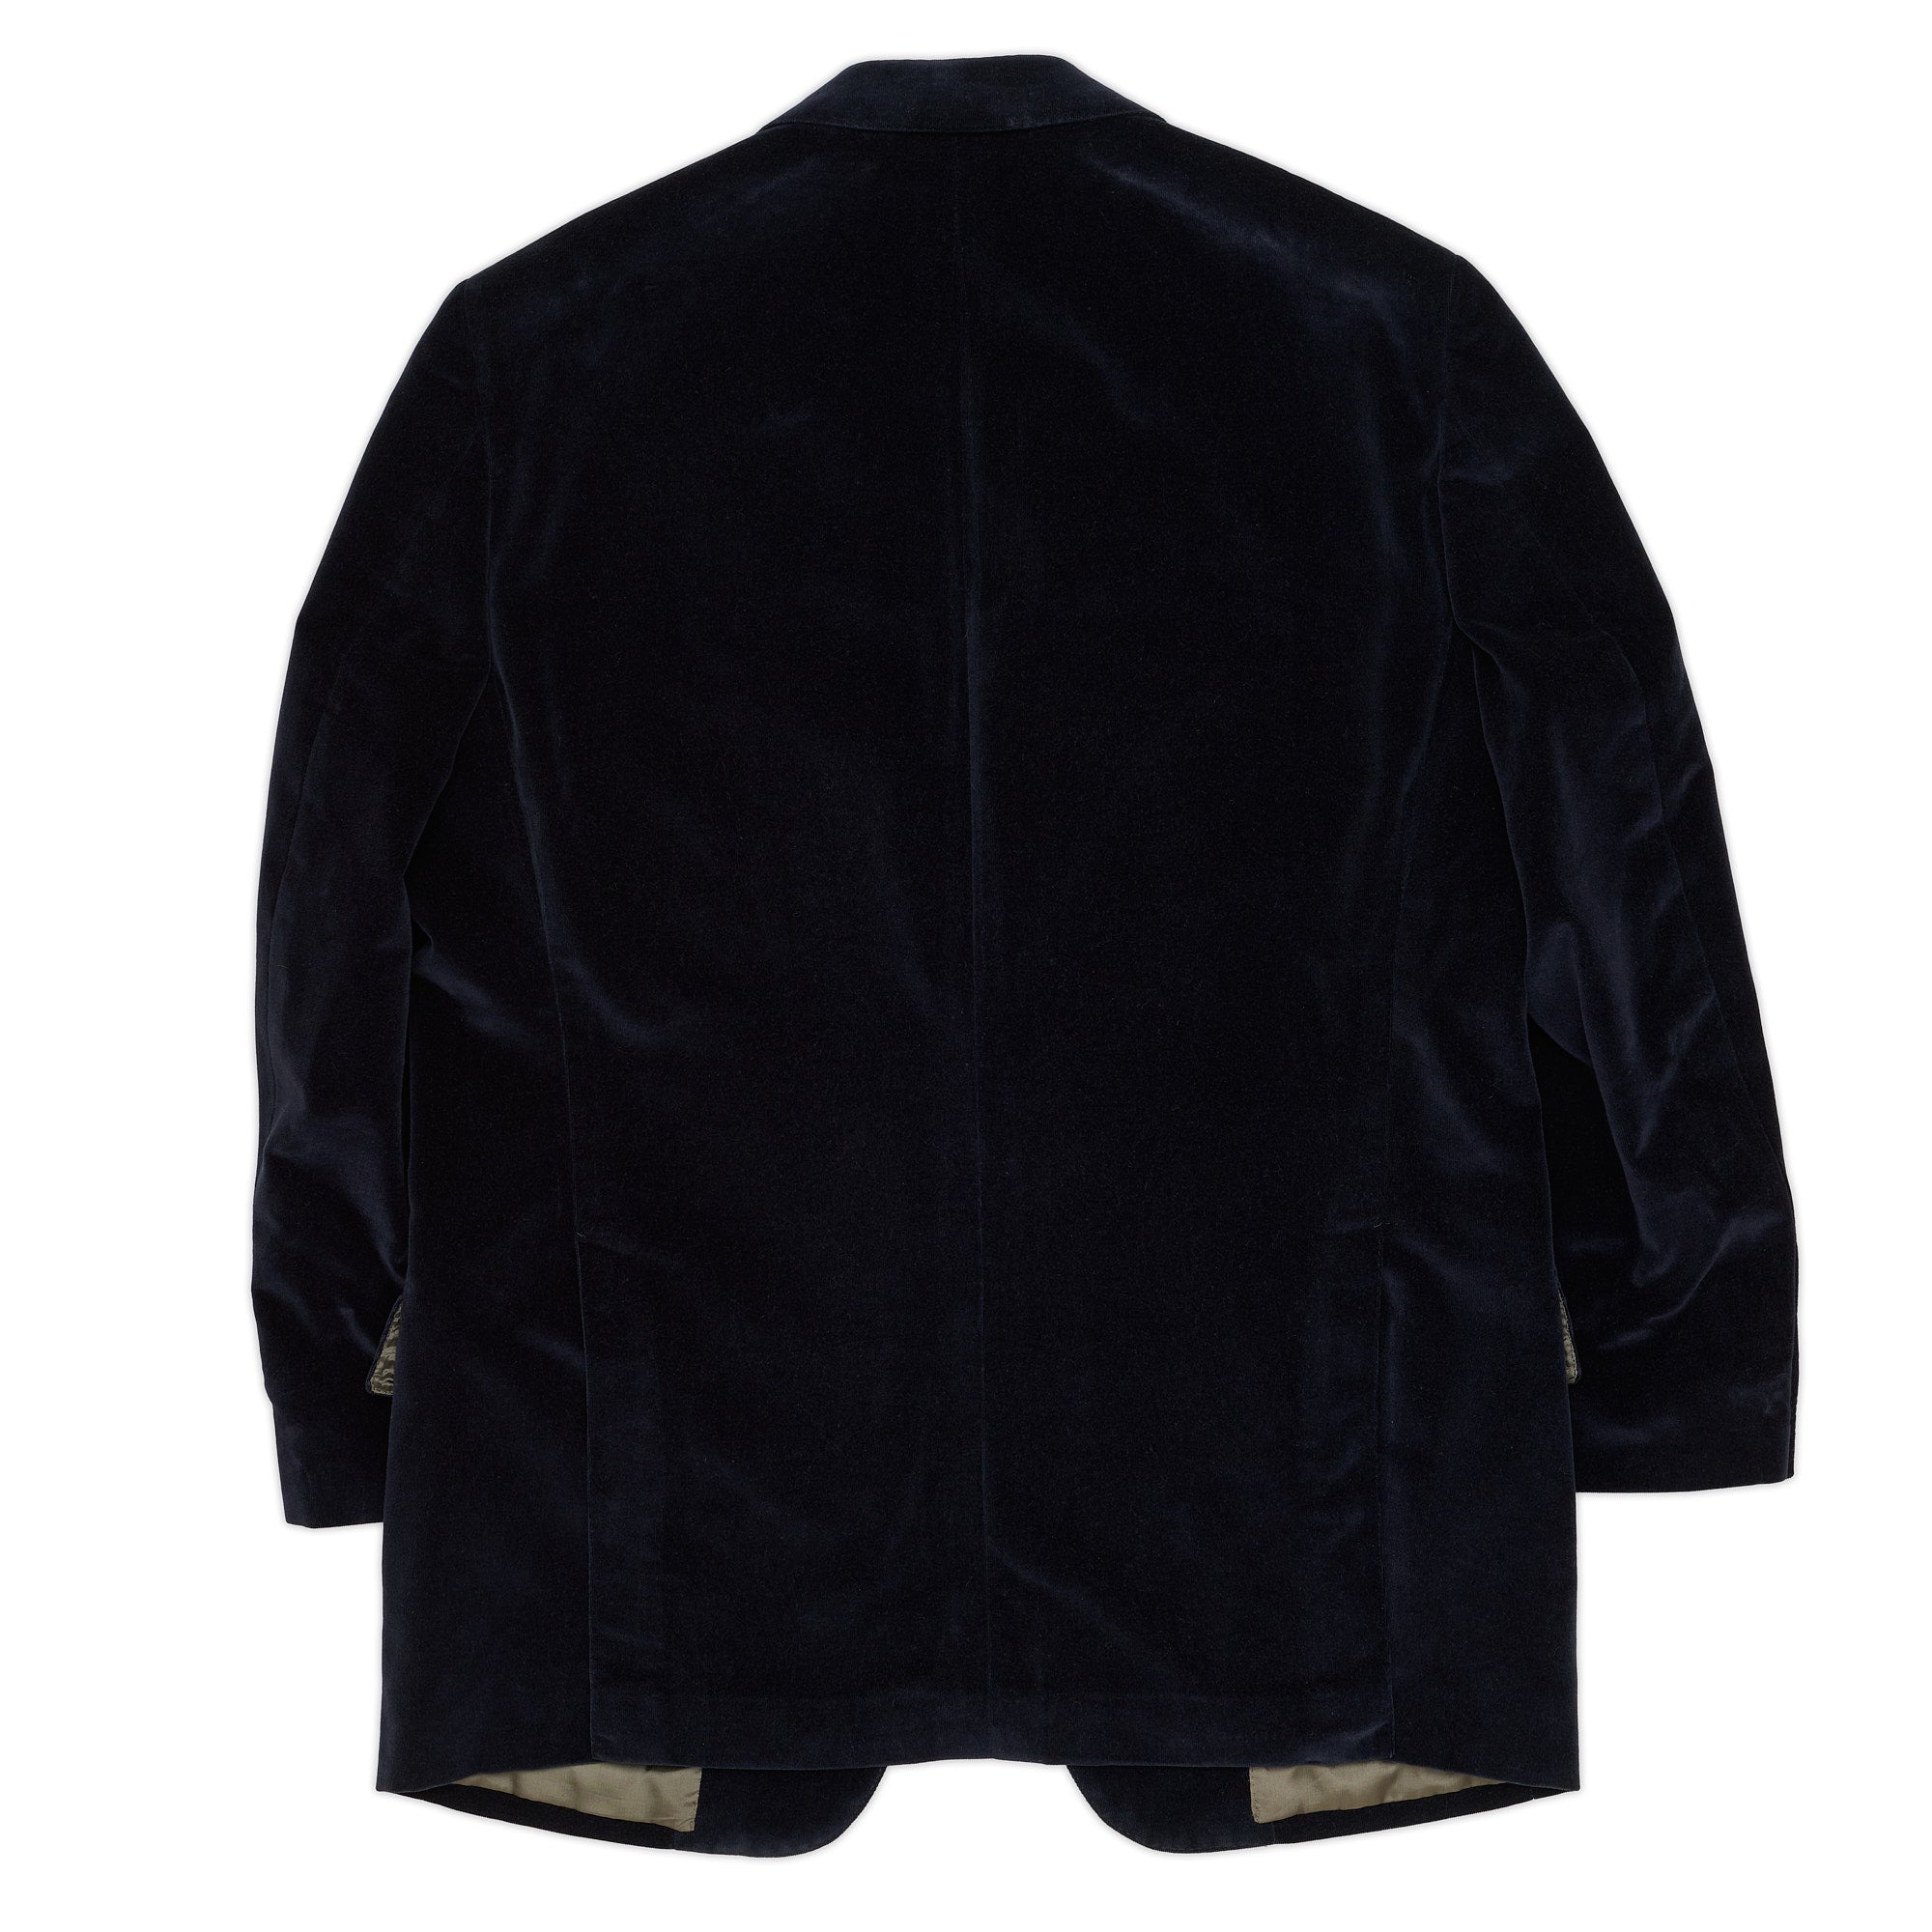 JAY KOS New York Navy Blue Cotton Velvet Jacket US 42 44